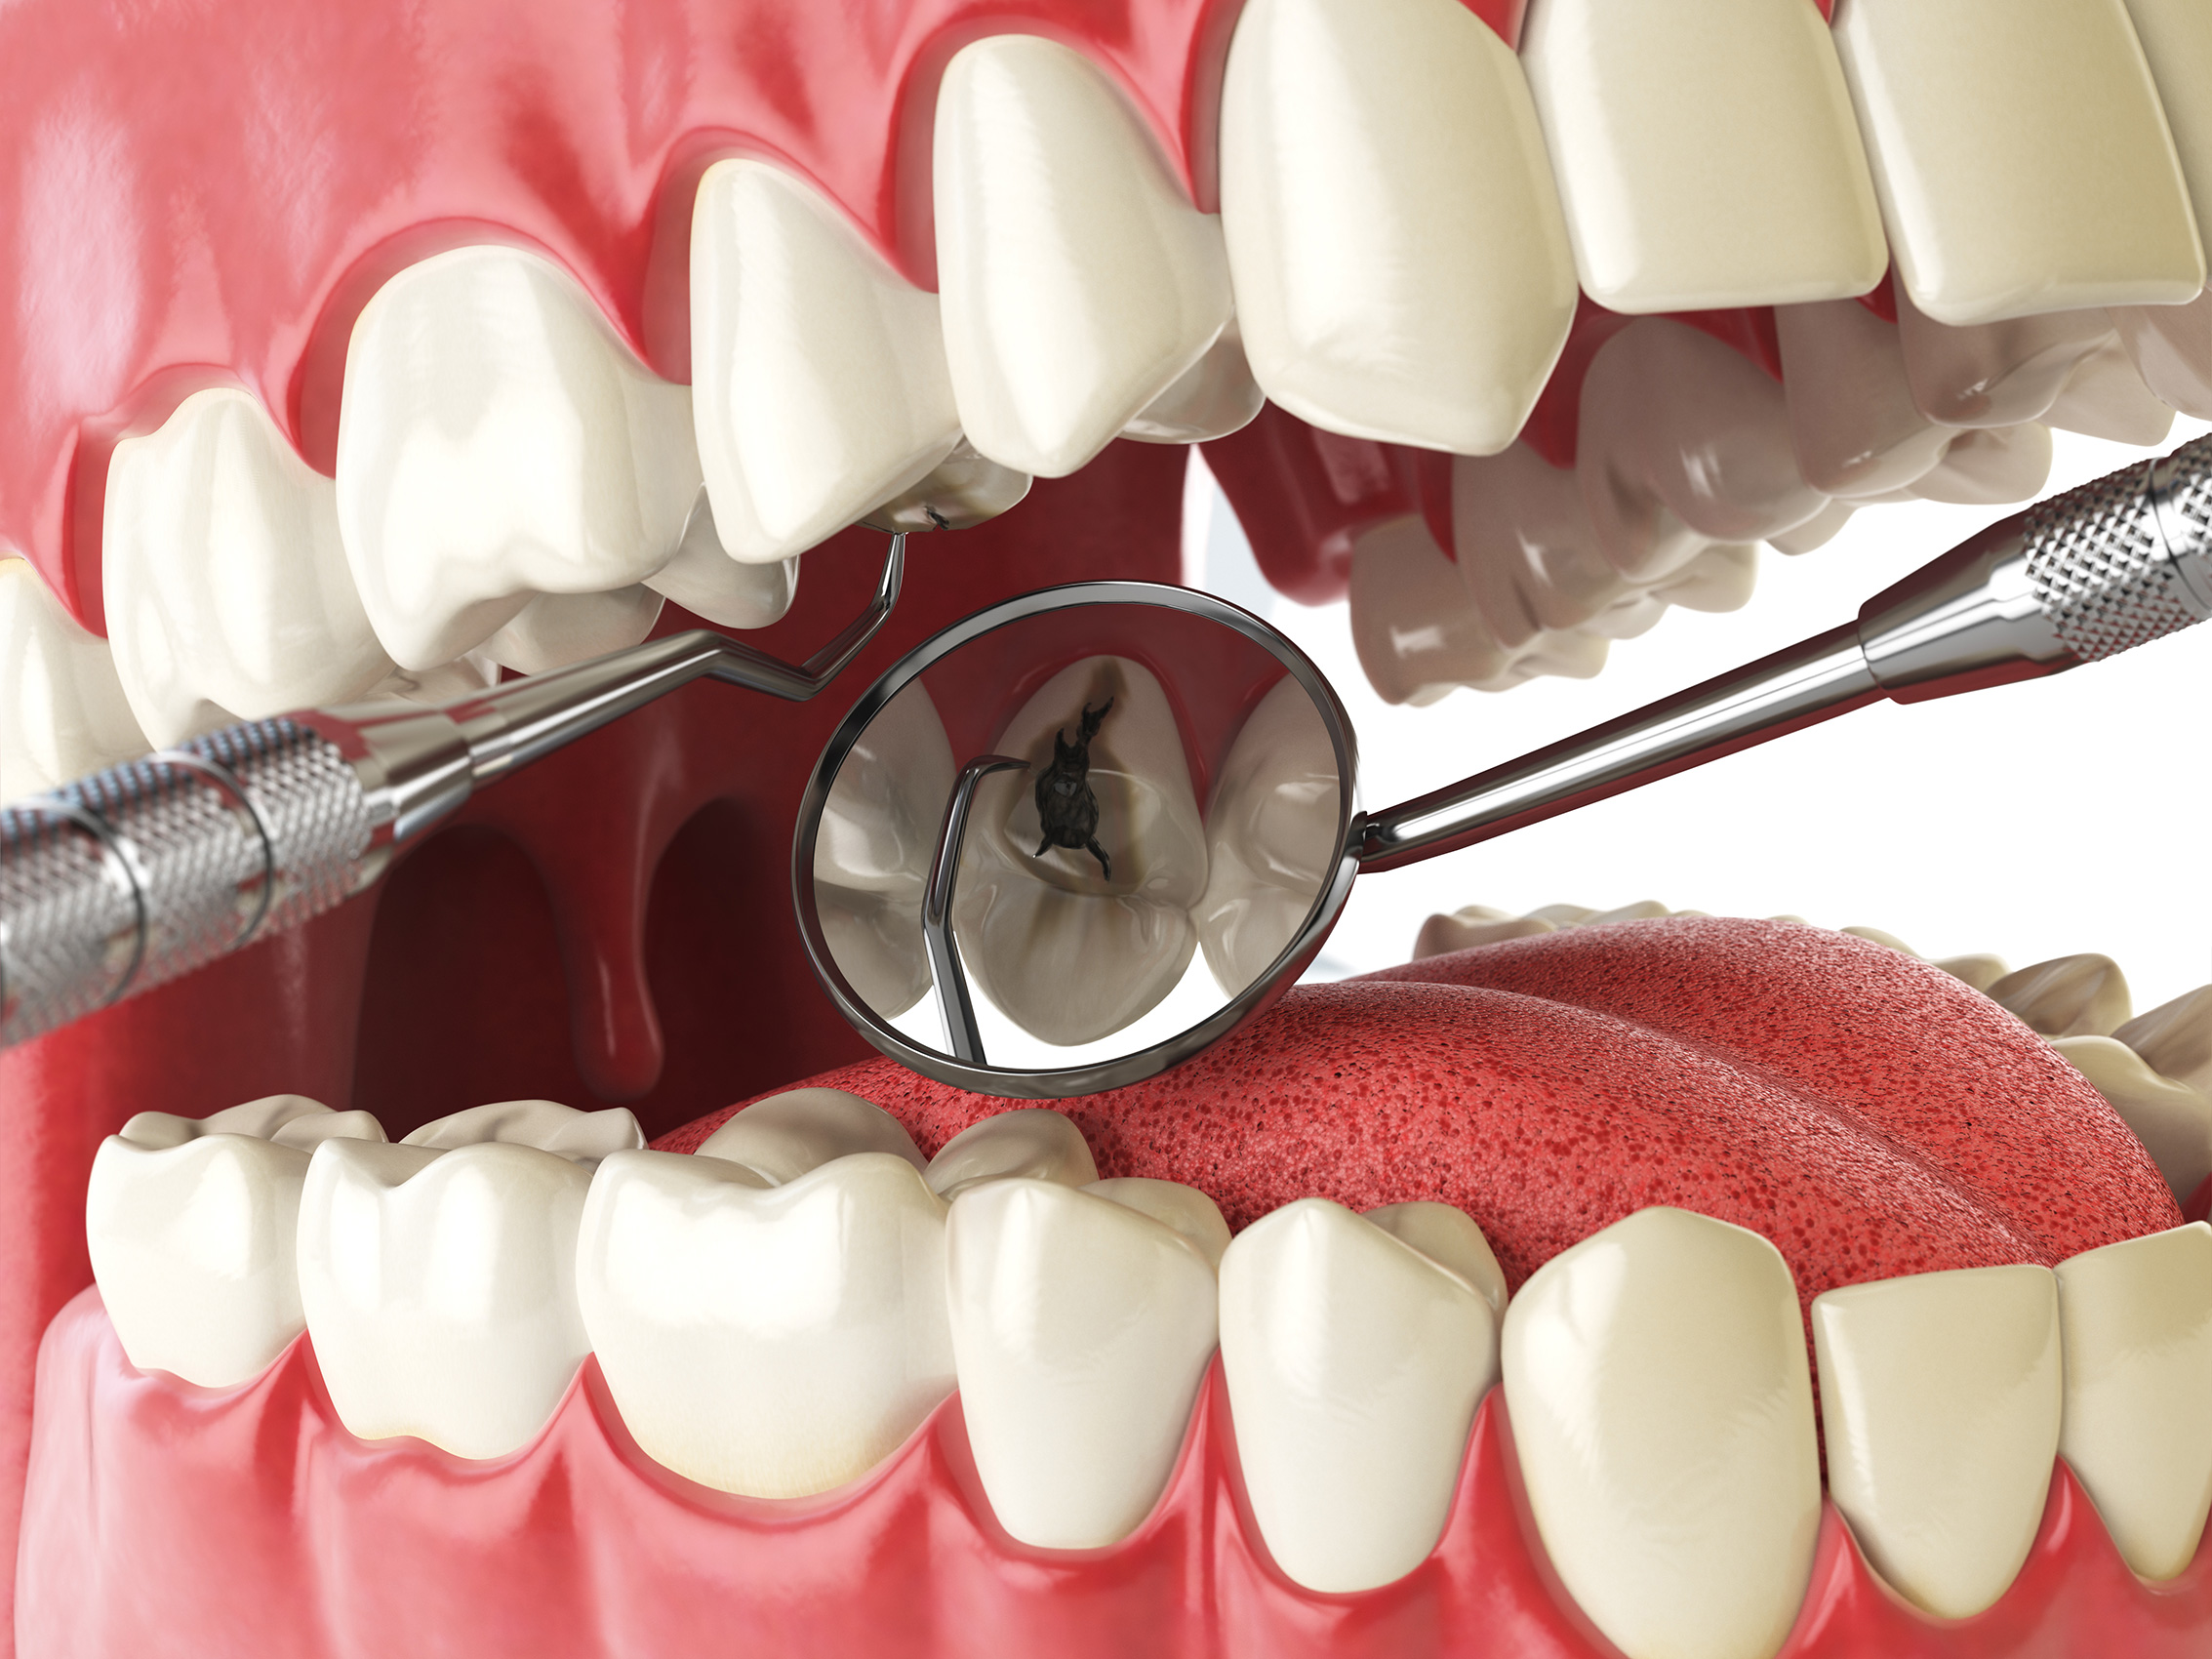 Лечение зубов и чистка каналов – этапы процесса